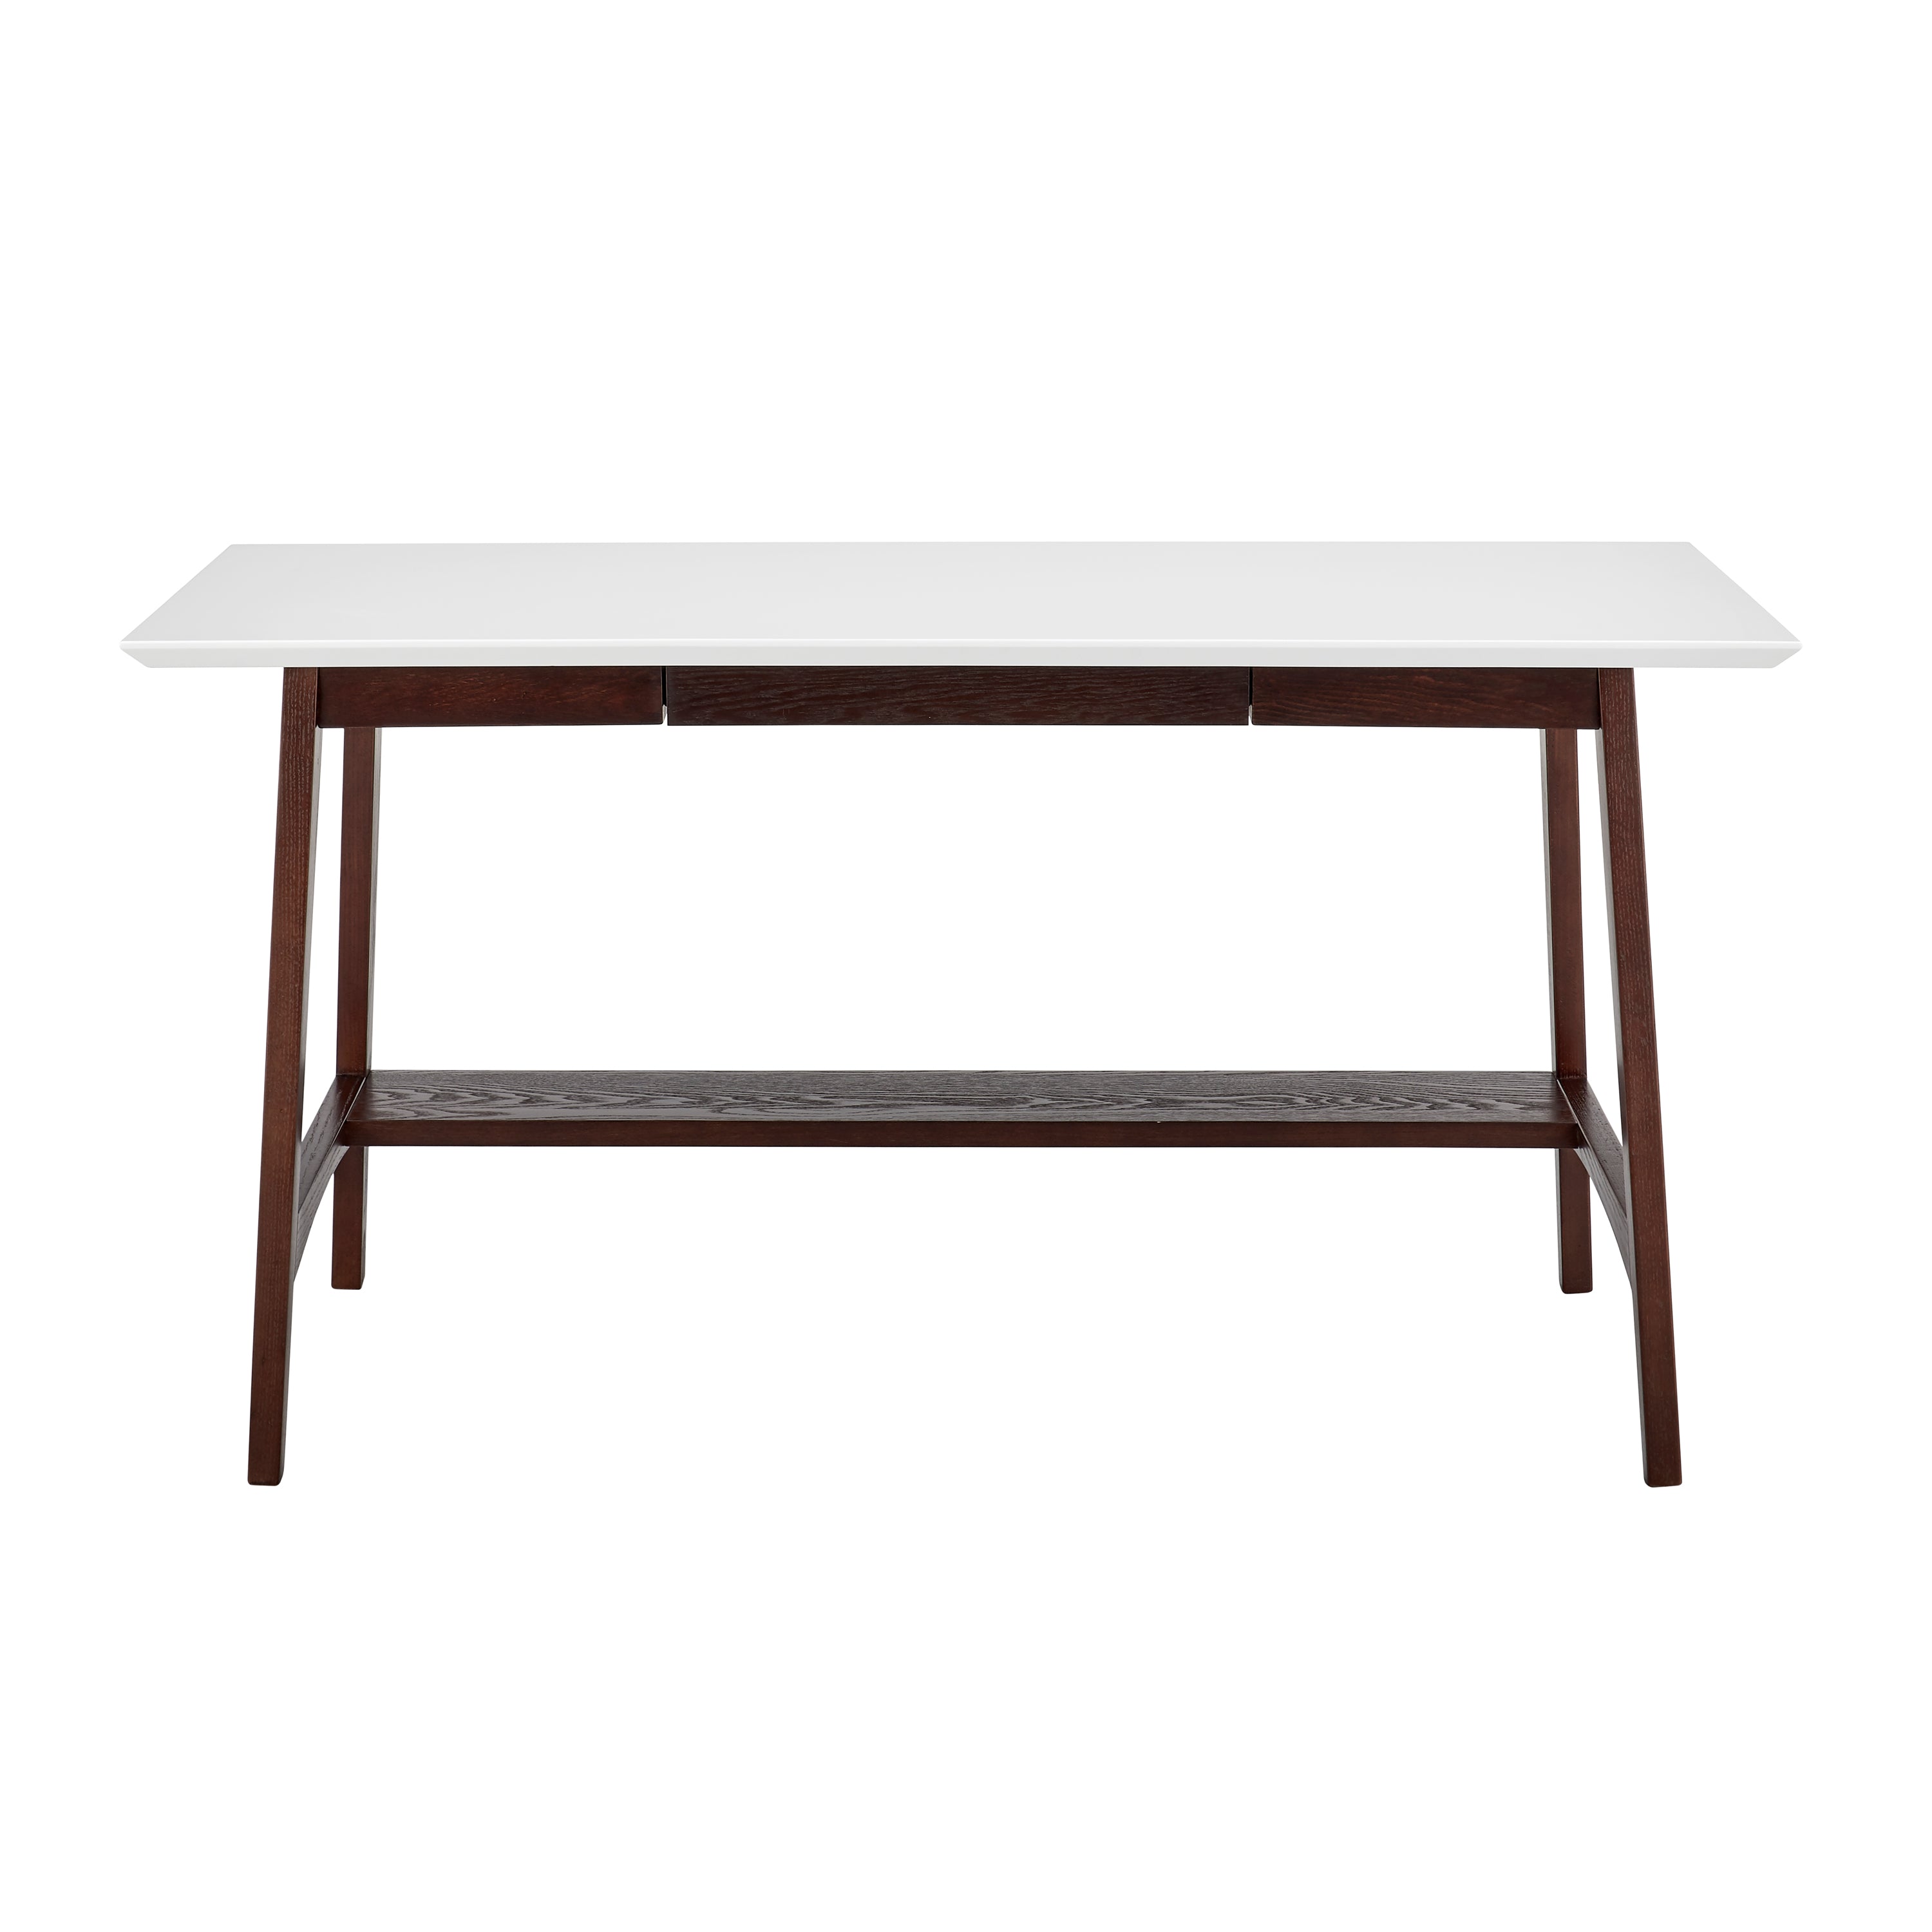 Euro Style Desks - Manon Desk in Matte White with Dark Walnut Legs and Shelf